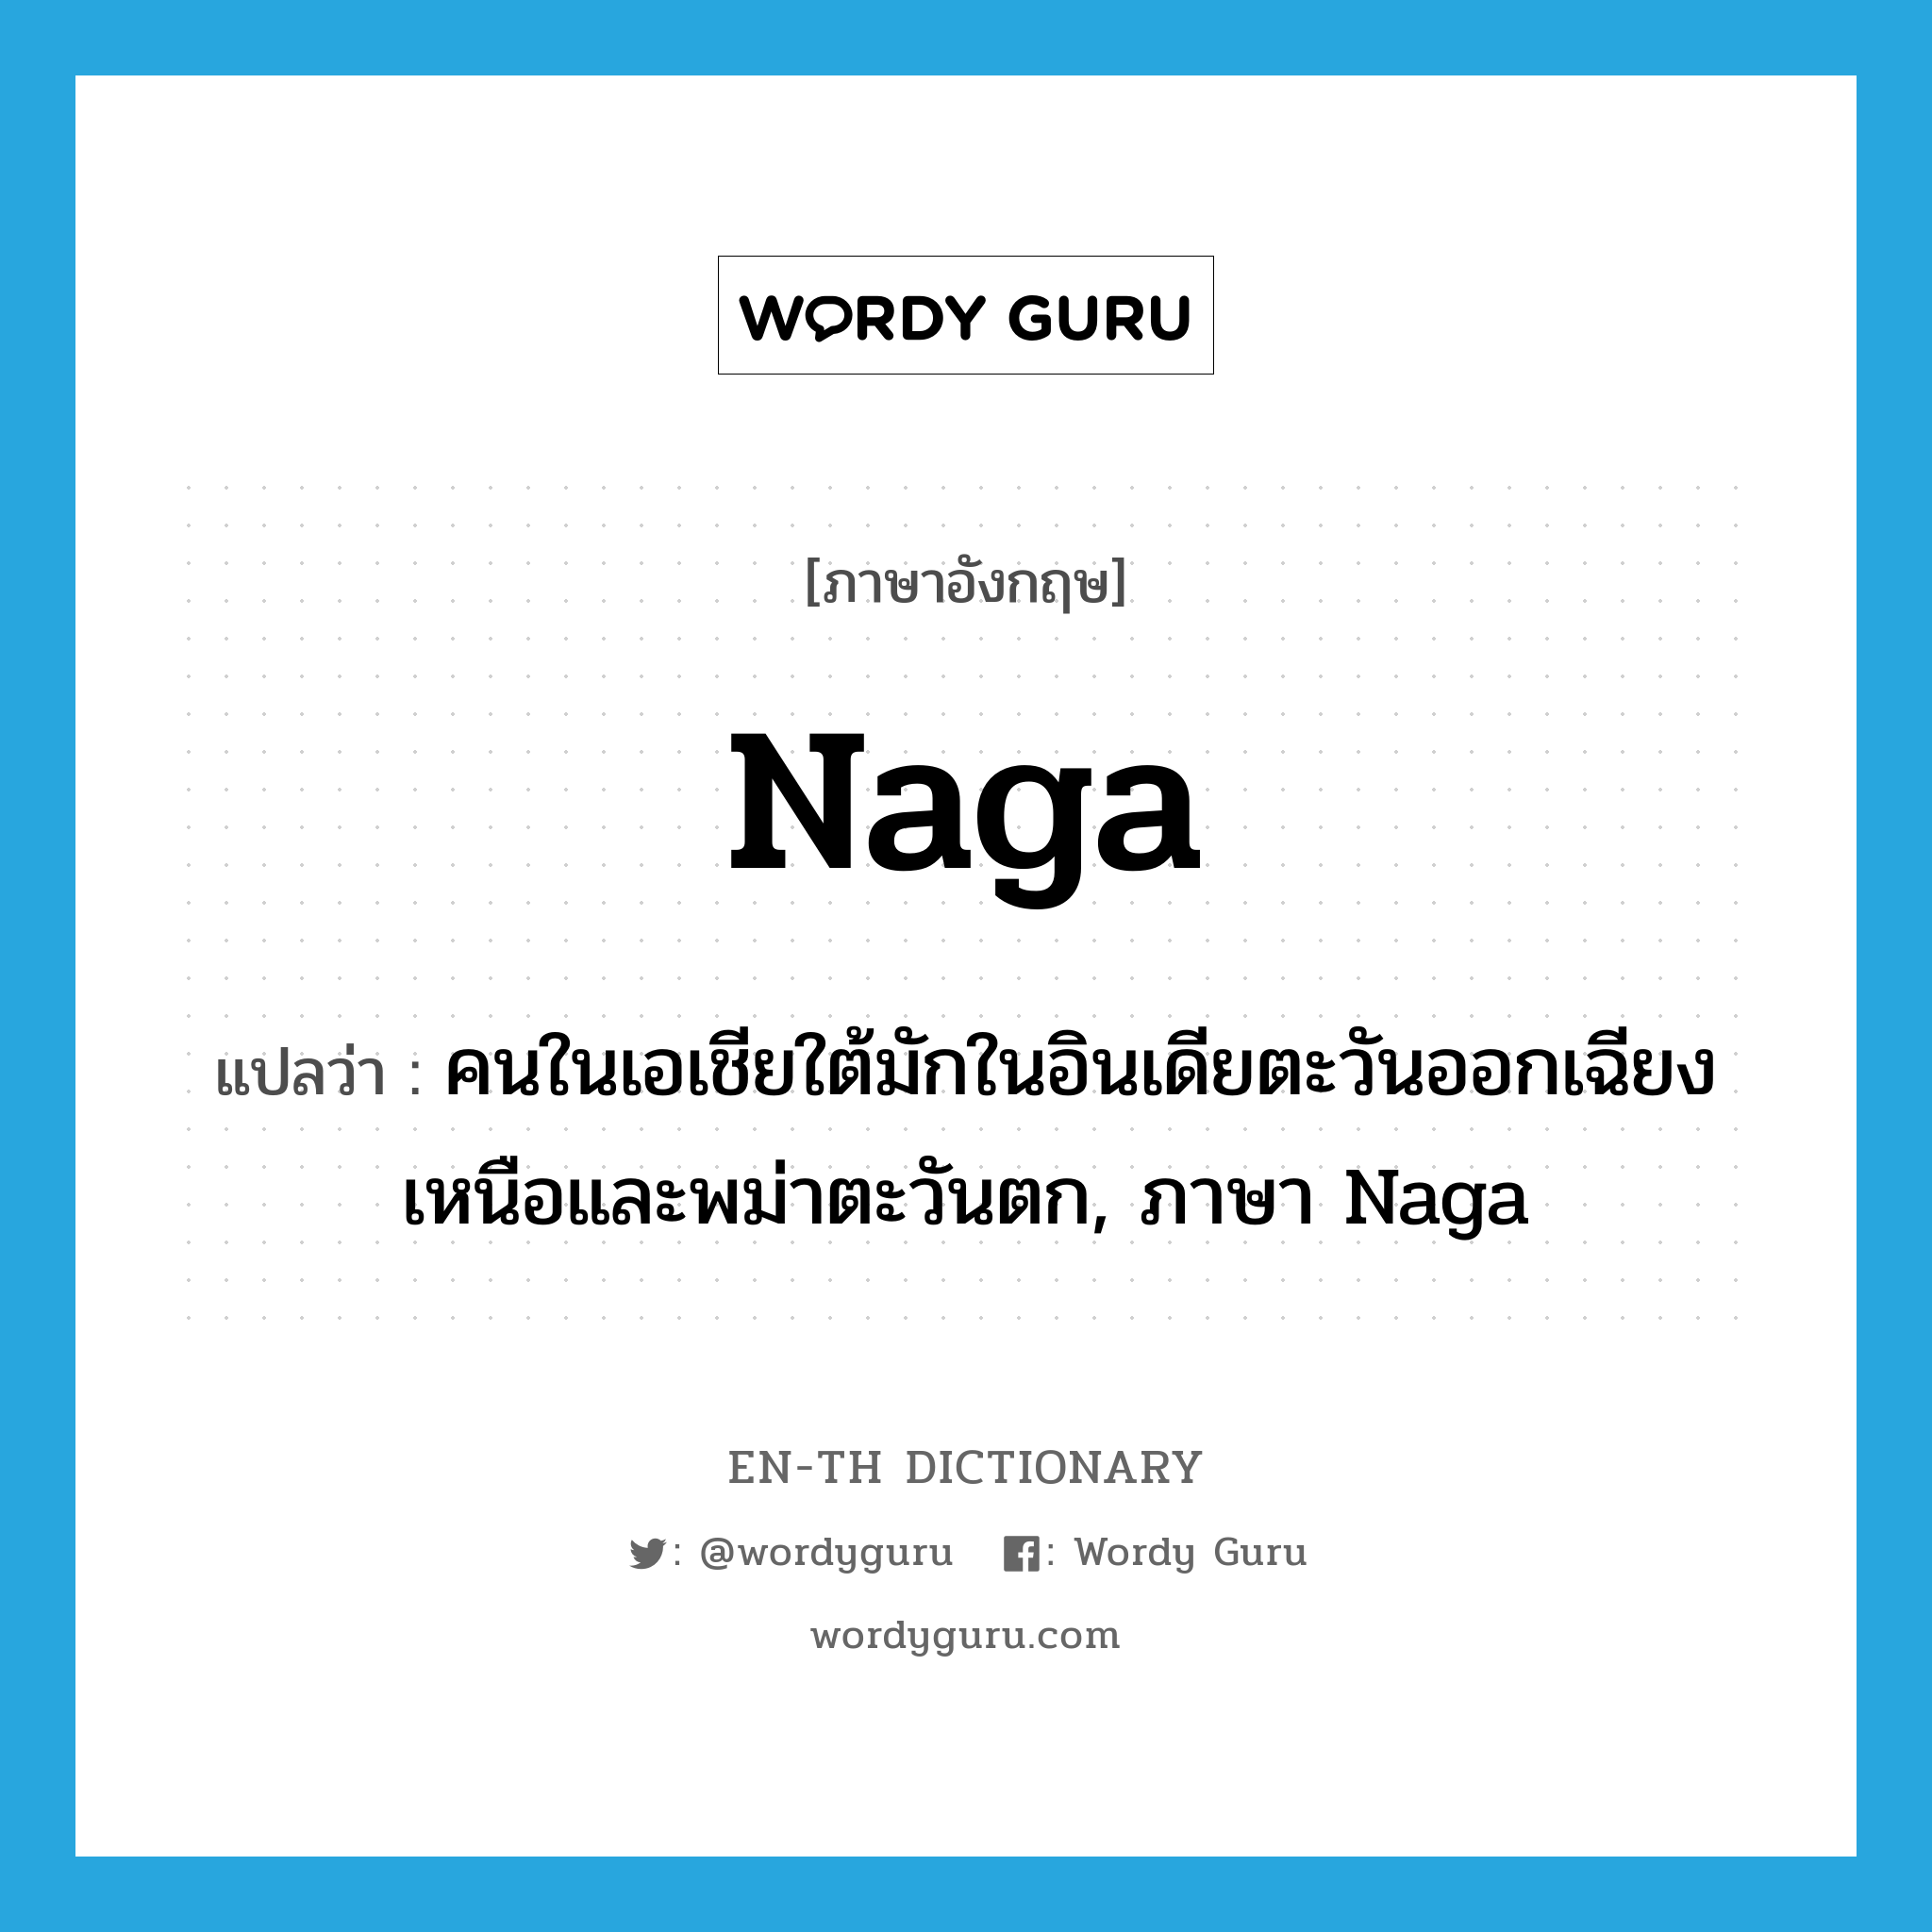 คนในเอเชียใต้มักในอินเดียตะวันออกเฉียงเหนือและพม่าตะวันตก, ภาษา Naga ภาษาอังกฤษ?, คำศัพท์ภาษาอังกฤษ คนในเอเชียใต้มักในอินเดียตะวันออกเฉียงเหนือและพม่าตะวันตก, ภาษา Naga แปลว่า Naga ประเภท N หมวด N